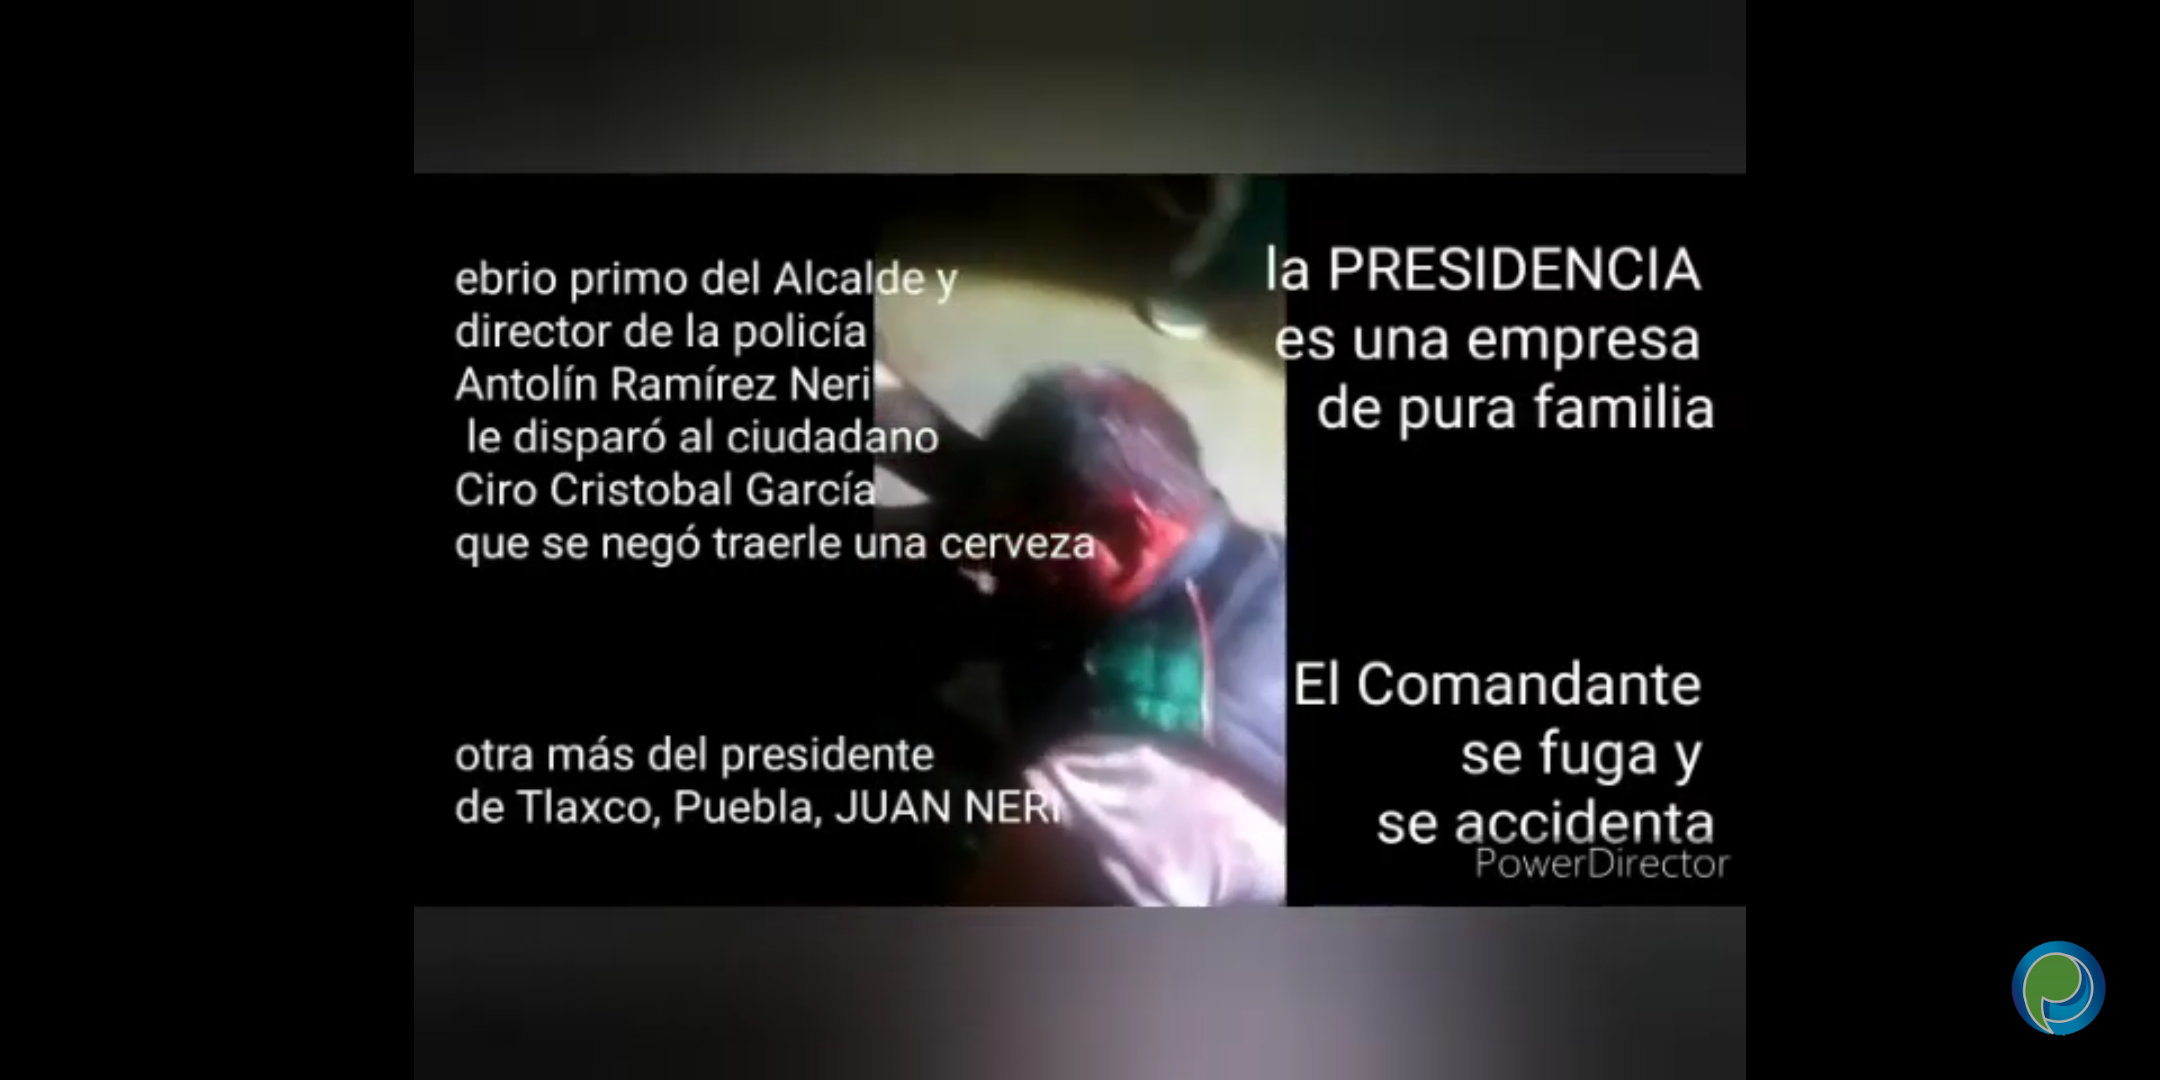 Acusan al director de la policía de Tlaxco de disparar a un ciudadano por no llevarle cerveza